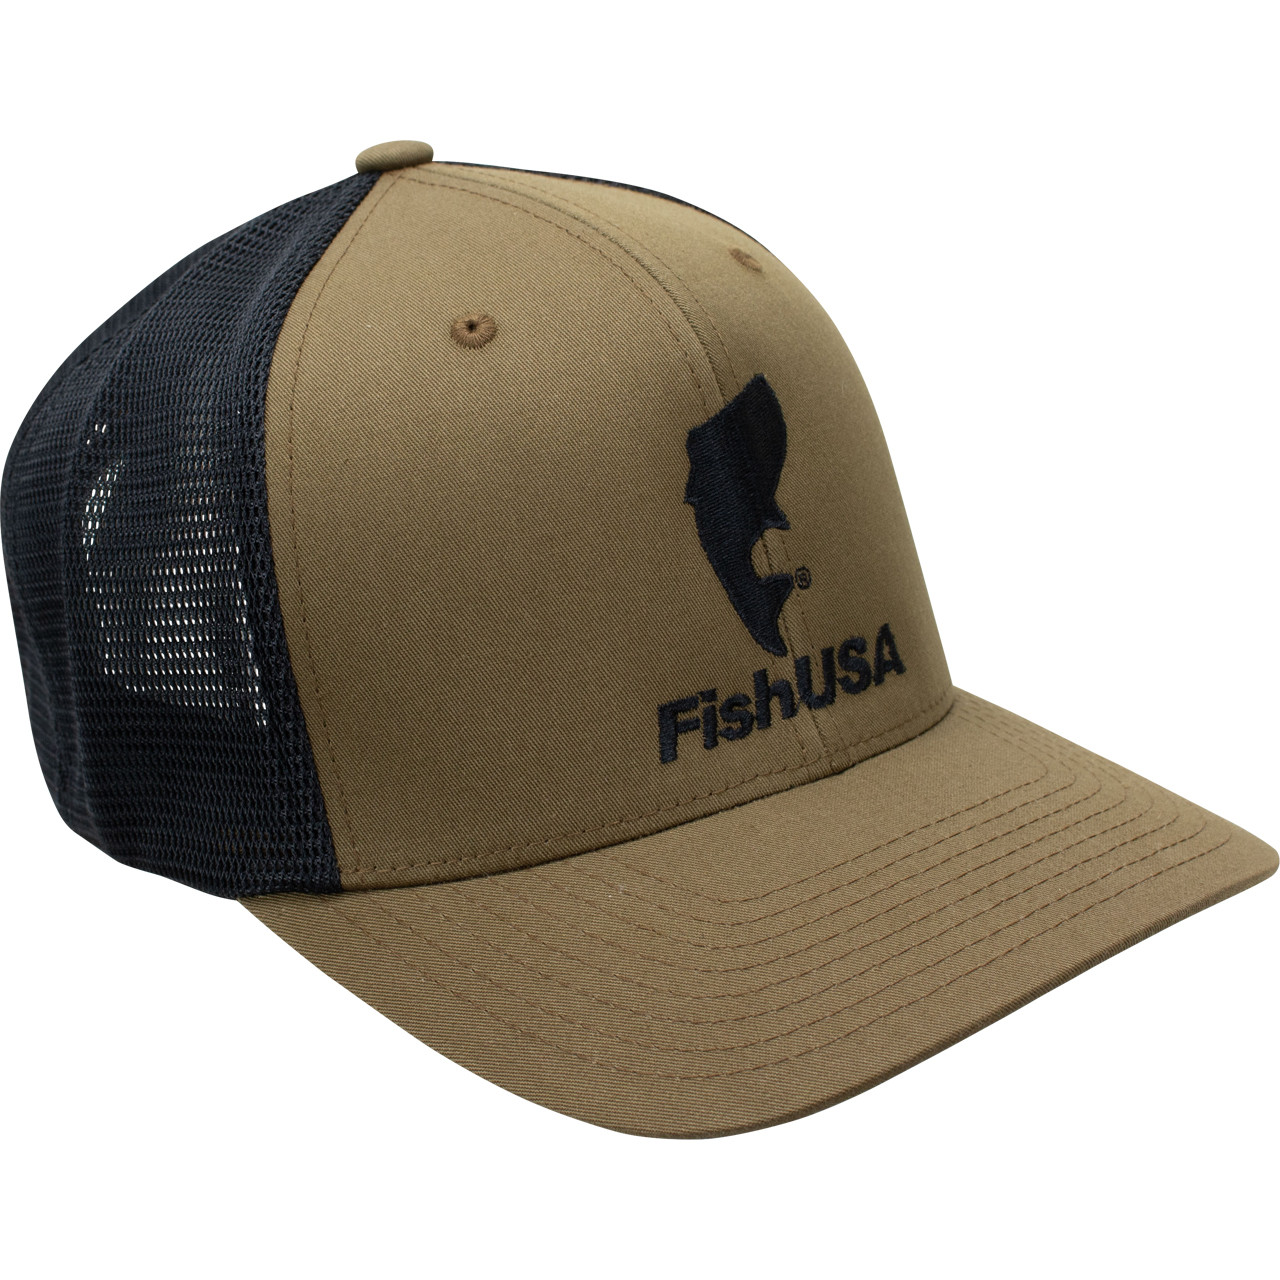 FishUSA Hat Trucker | Flexfit FishUSA